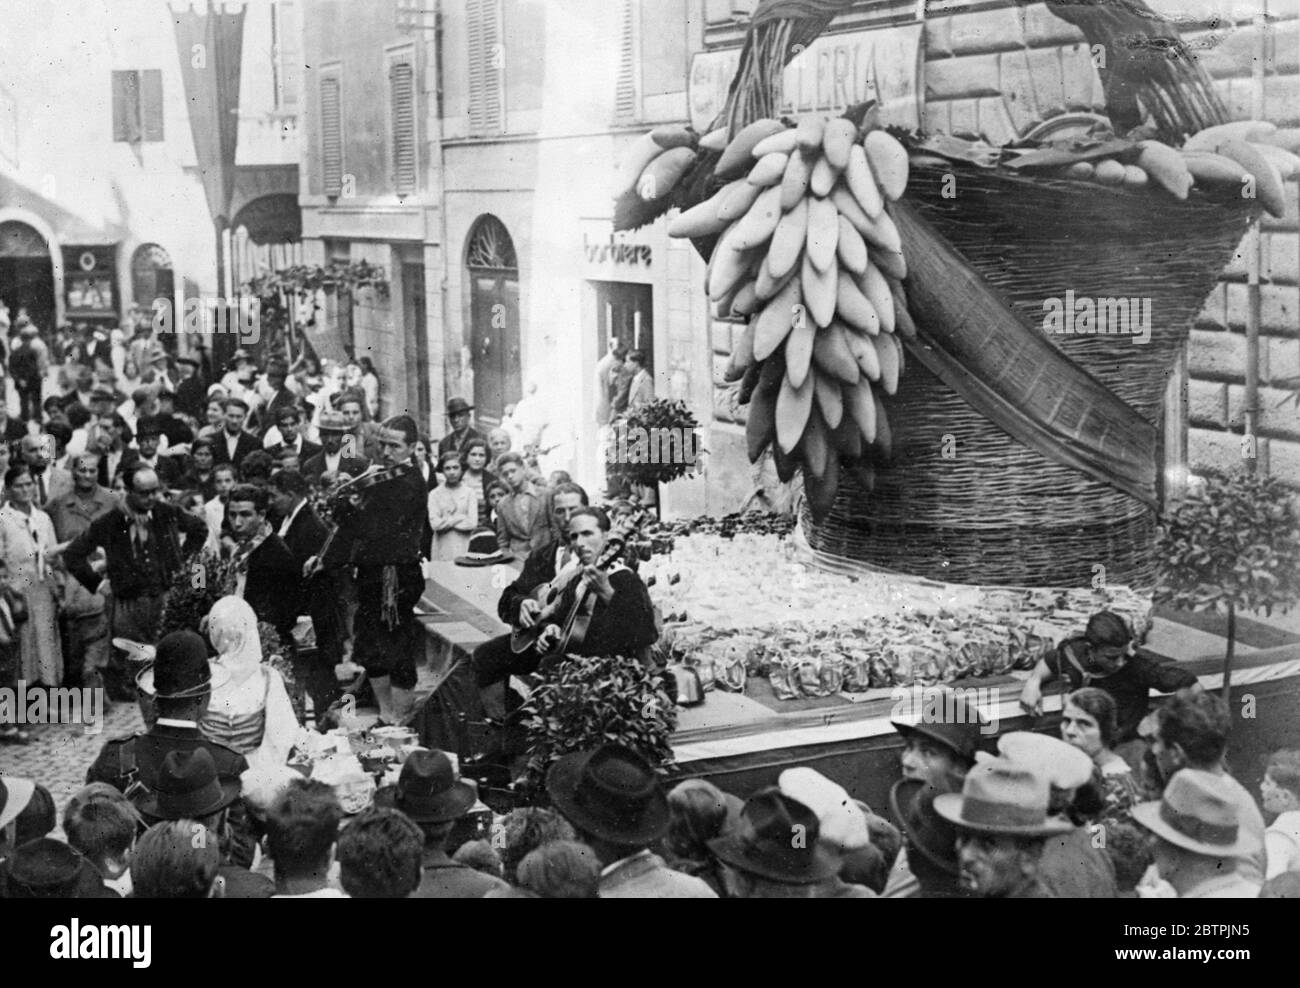 Festival du raisin à Tivoli . Le Festival traditionnel du raisin a été célébré à Tivoli , en Italie . La photo montre des musiciens jouant à une foule dans une rue de Tivoli pendant le festival devant une exposition d'un panier géant de raisins. Septembre 1934 Banque D'Images